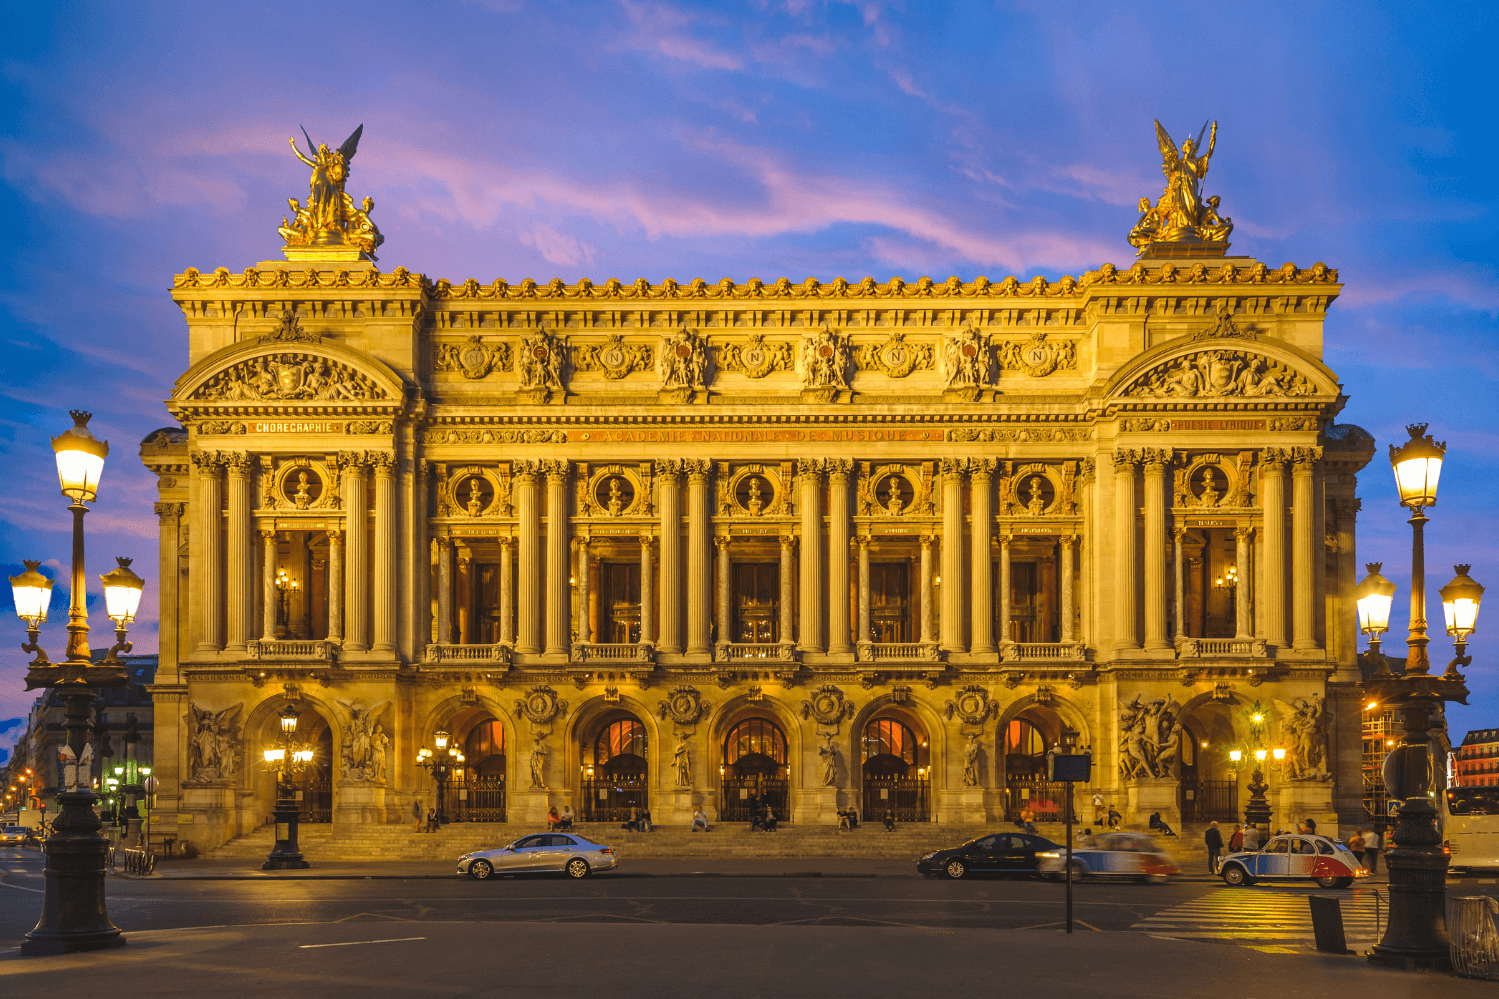 Opéra Garnier/ Palais Garnier in Paris 9th district of Paris